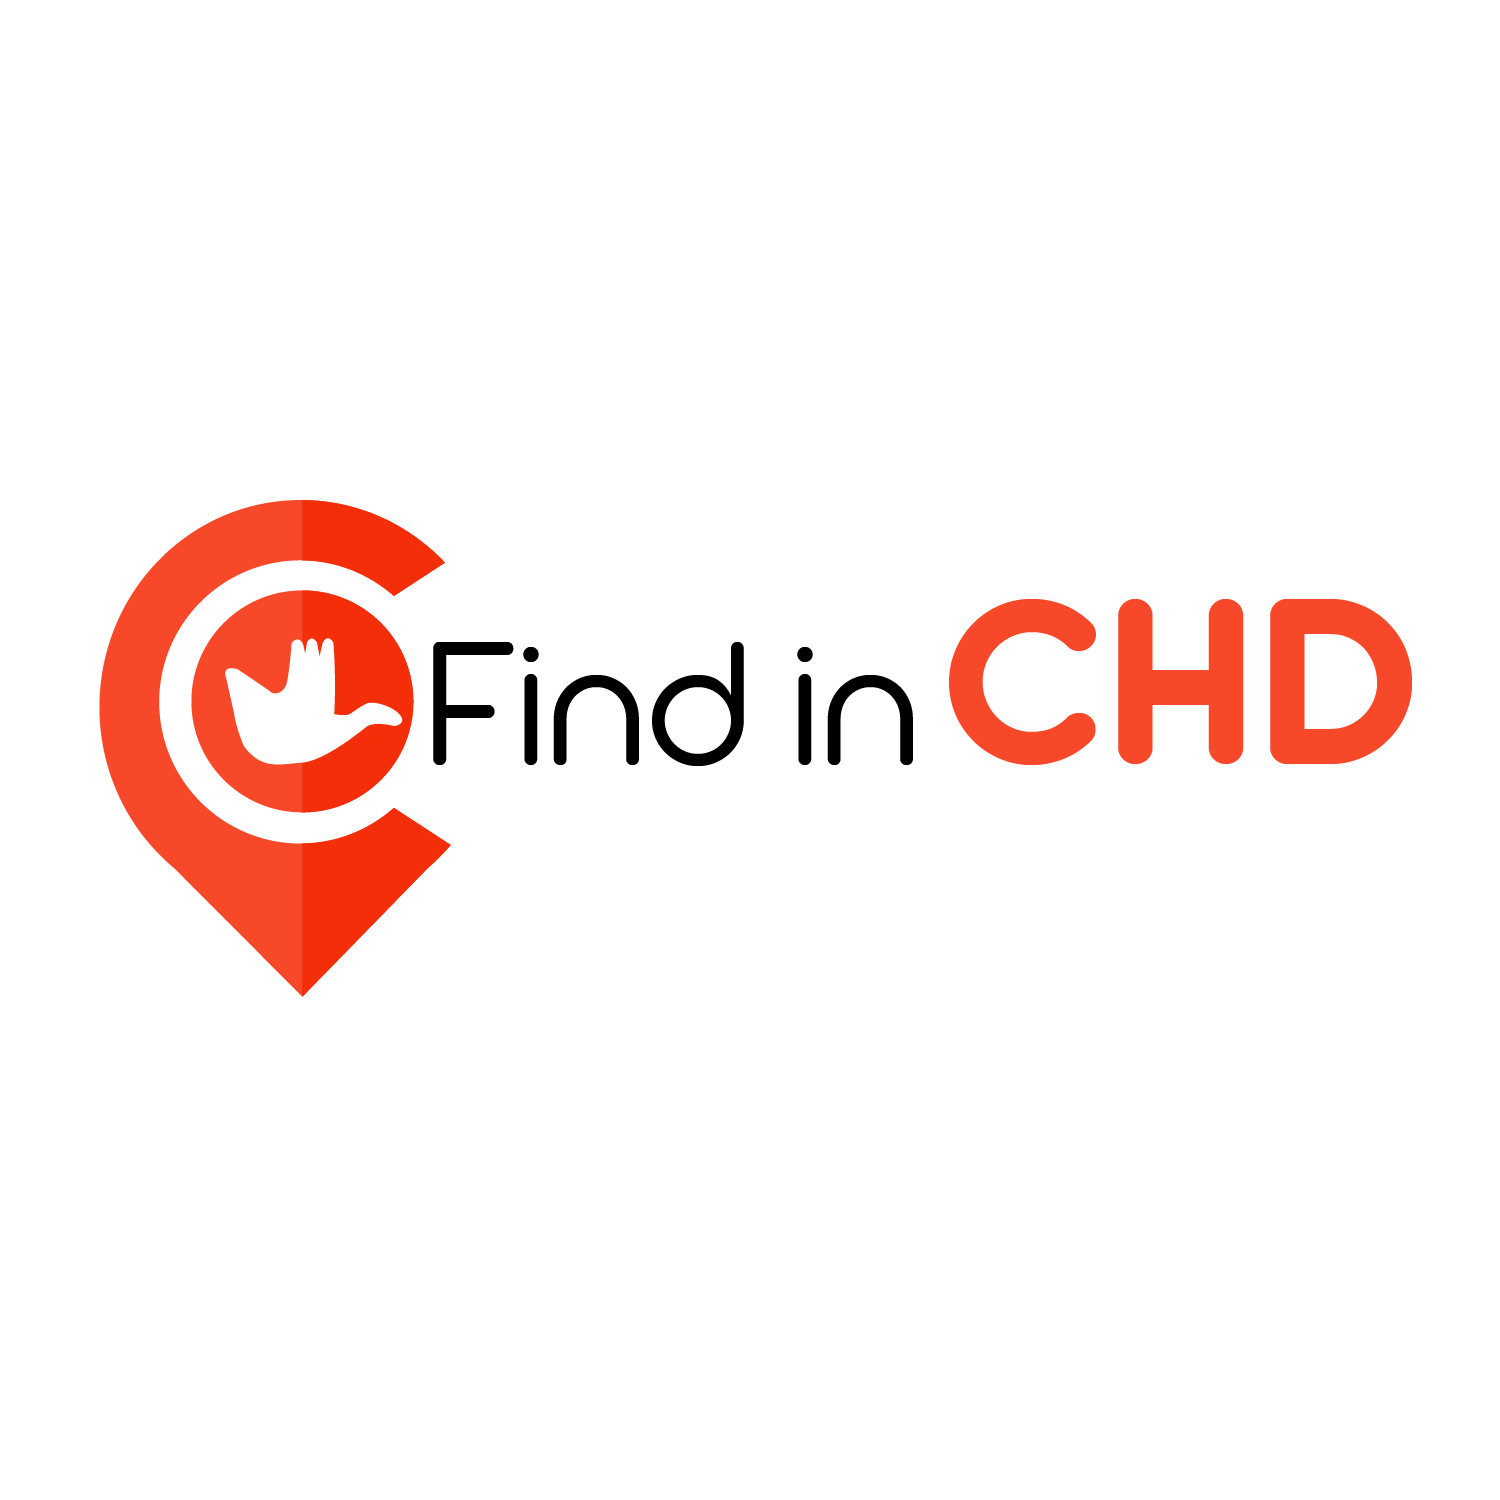 Find in CHD